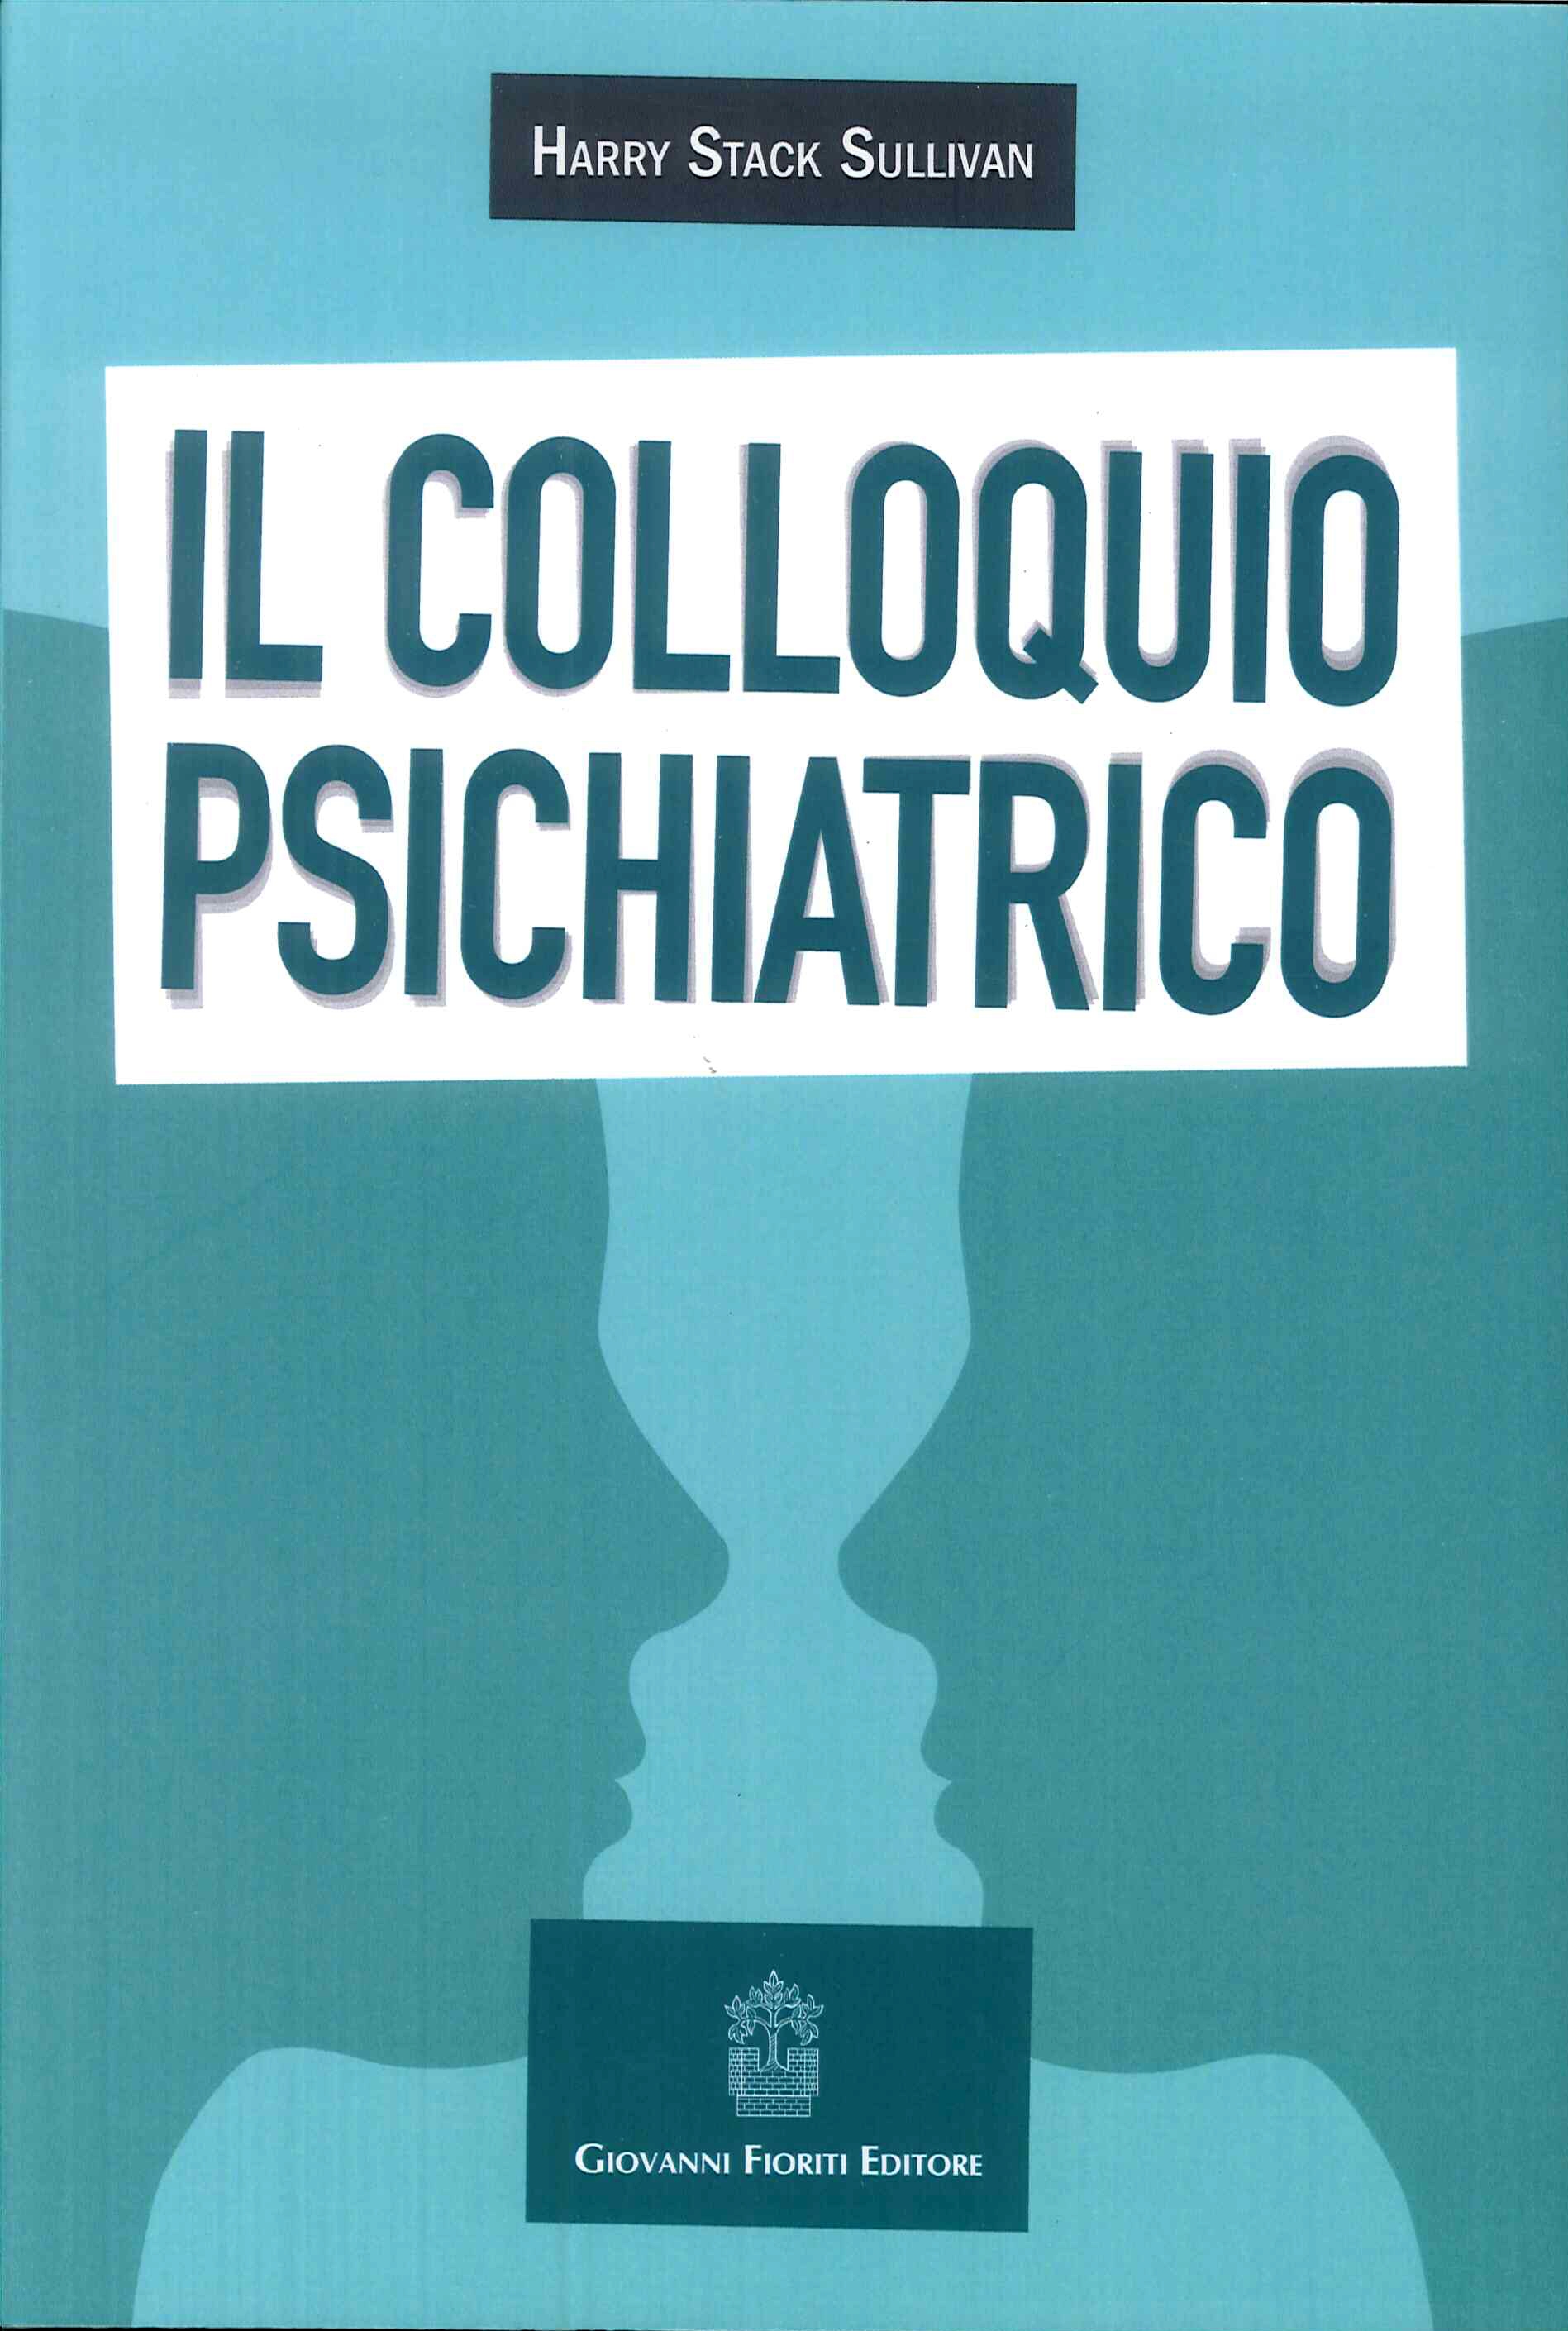 Libri Sullivan Harry Stack - Il Colloquio Psichiatrico NUOVO SIGILLATO, EDIZIONE DEL 12/09/2017 SUBITO DISPONIBILE